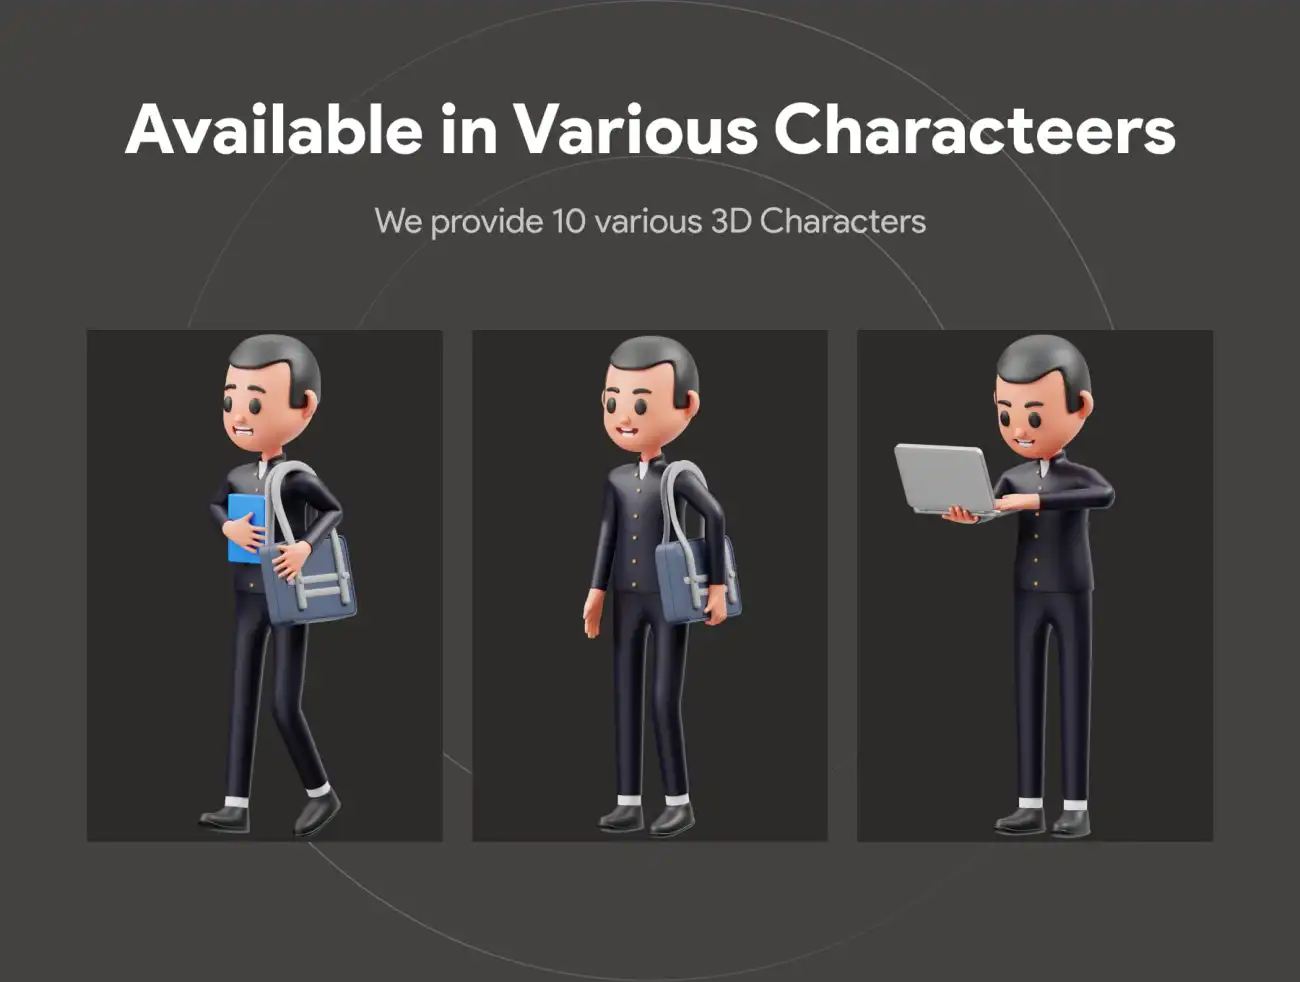 学生学习上课3D人物角色模型素材包 Student Character 3D Illustration .blender-3D/图标-到位啦UI